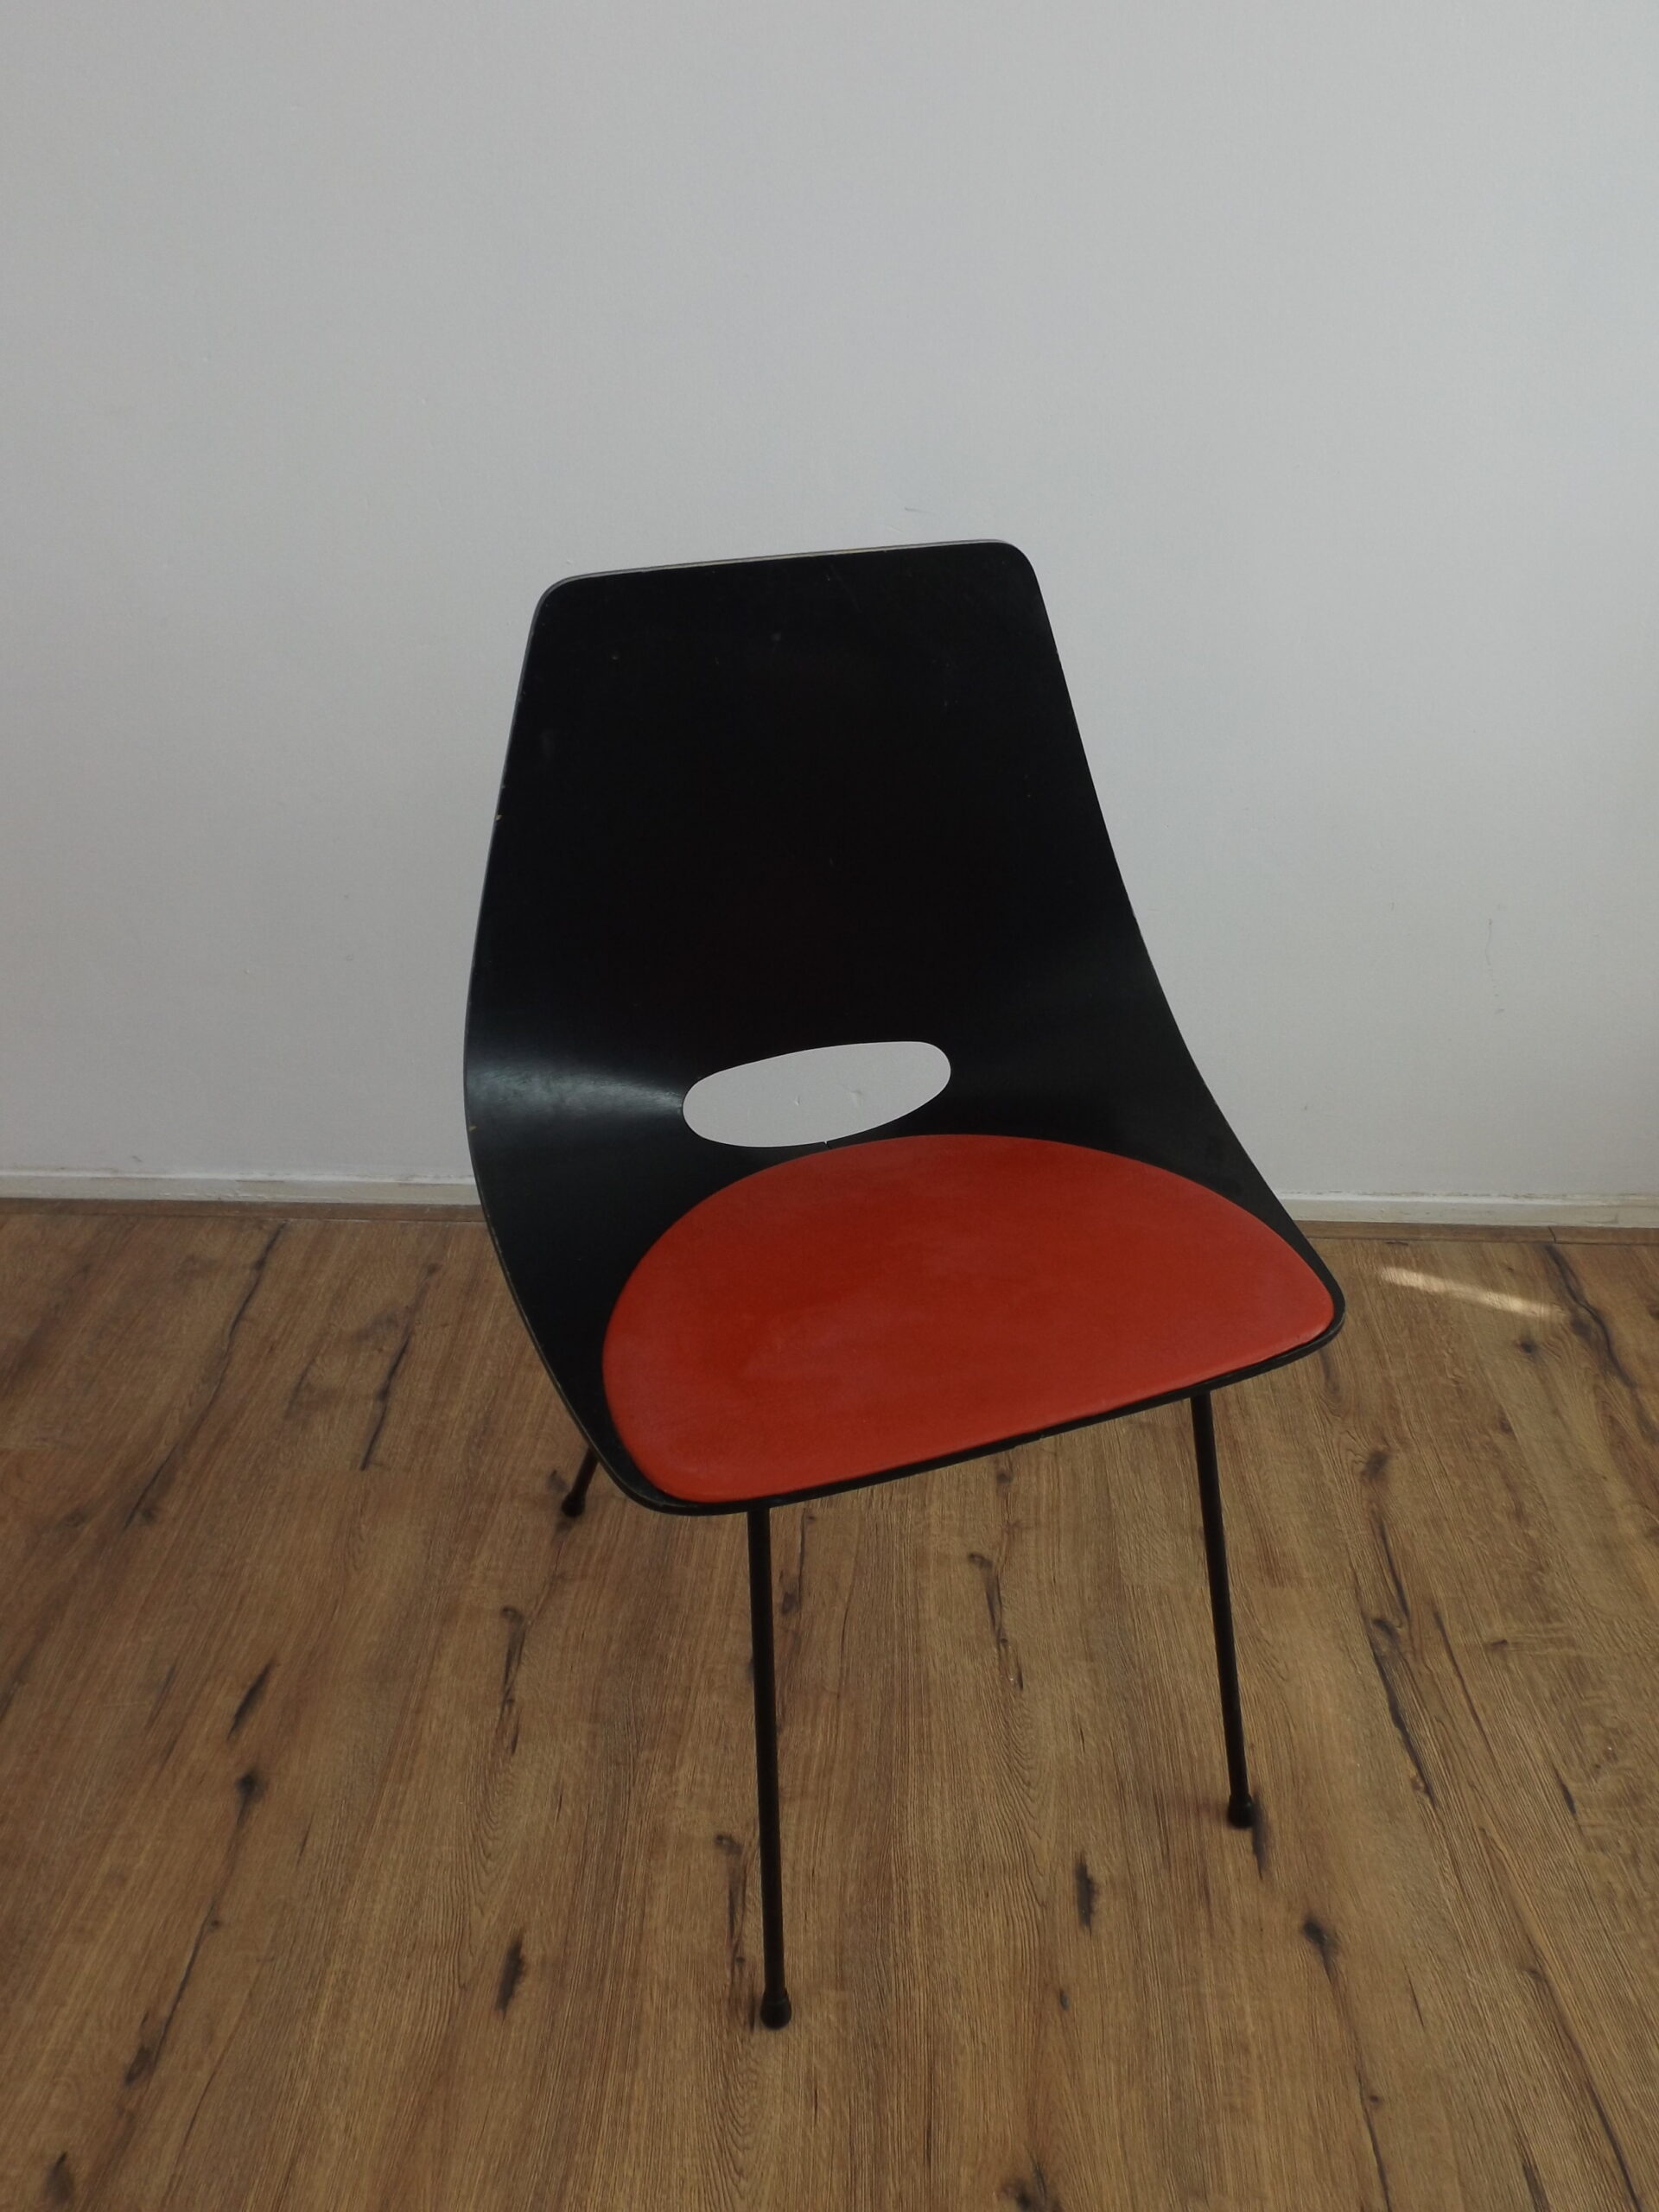 Guariche “Tonno” diner Chair